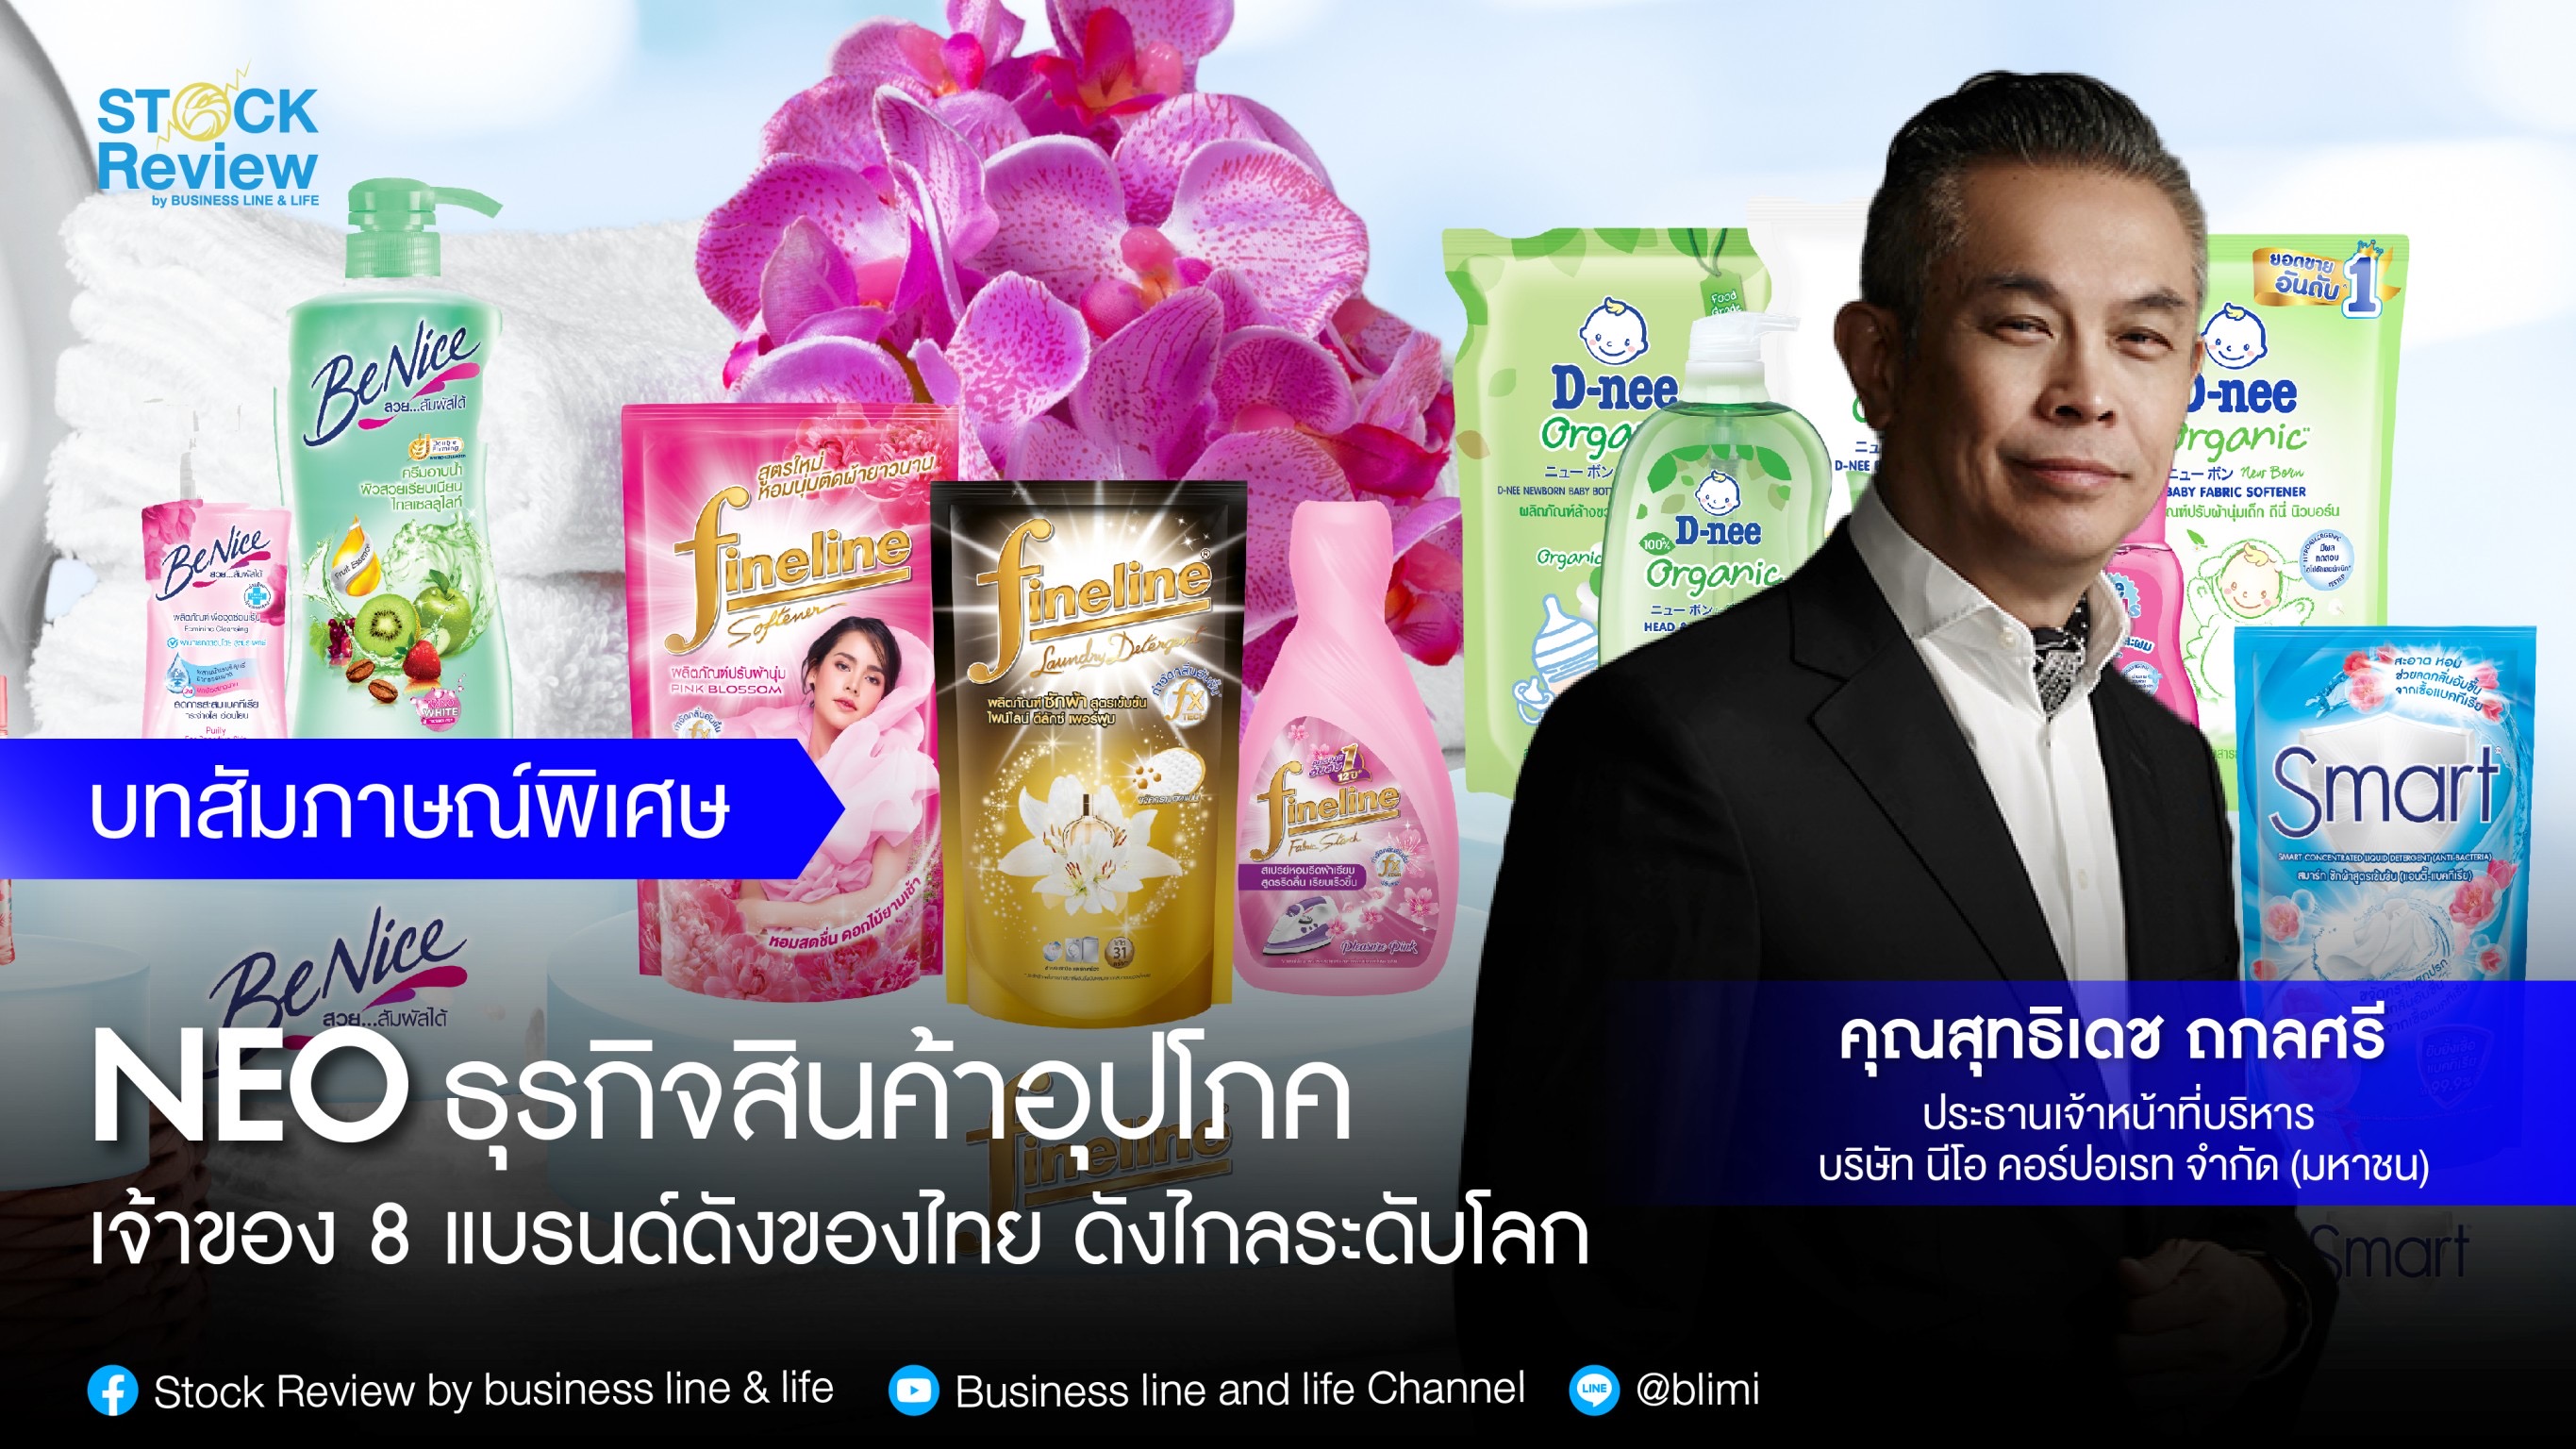 NEO ธุรกิจสินค้าอุปโภค เจ้าของ 8 แบรนด์ดังของไทย ดังไกลระดับโลก